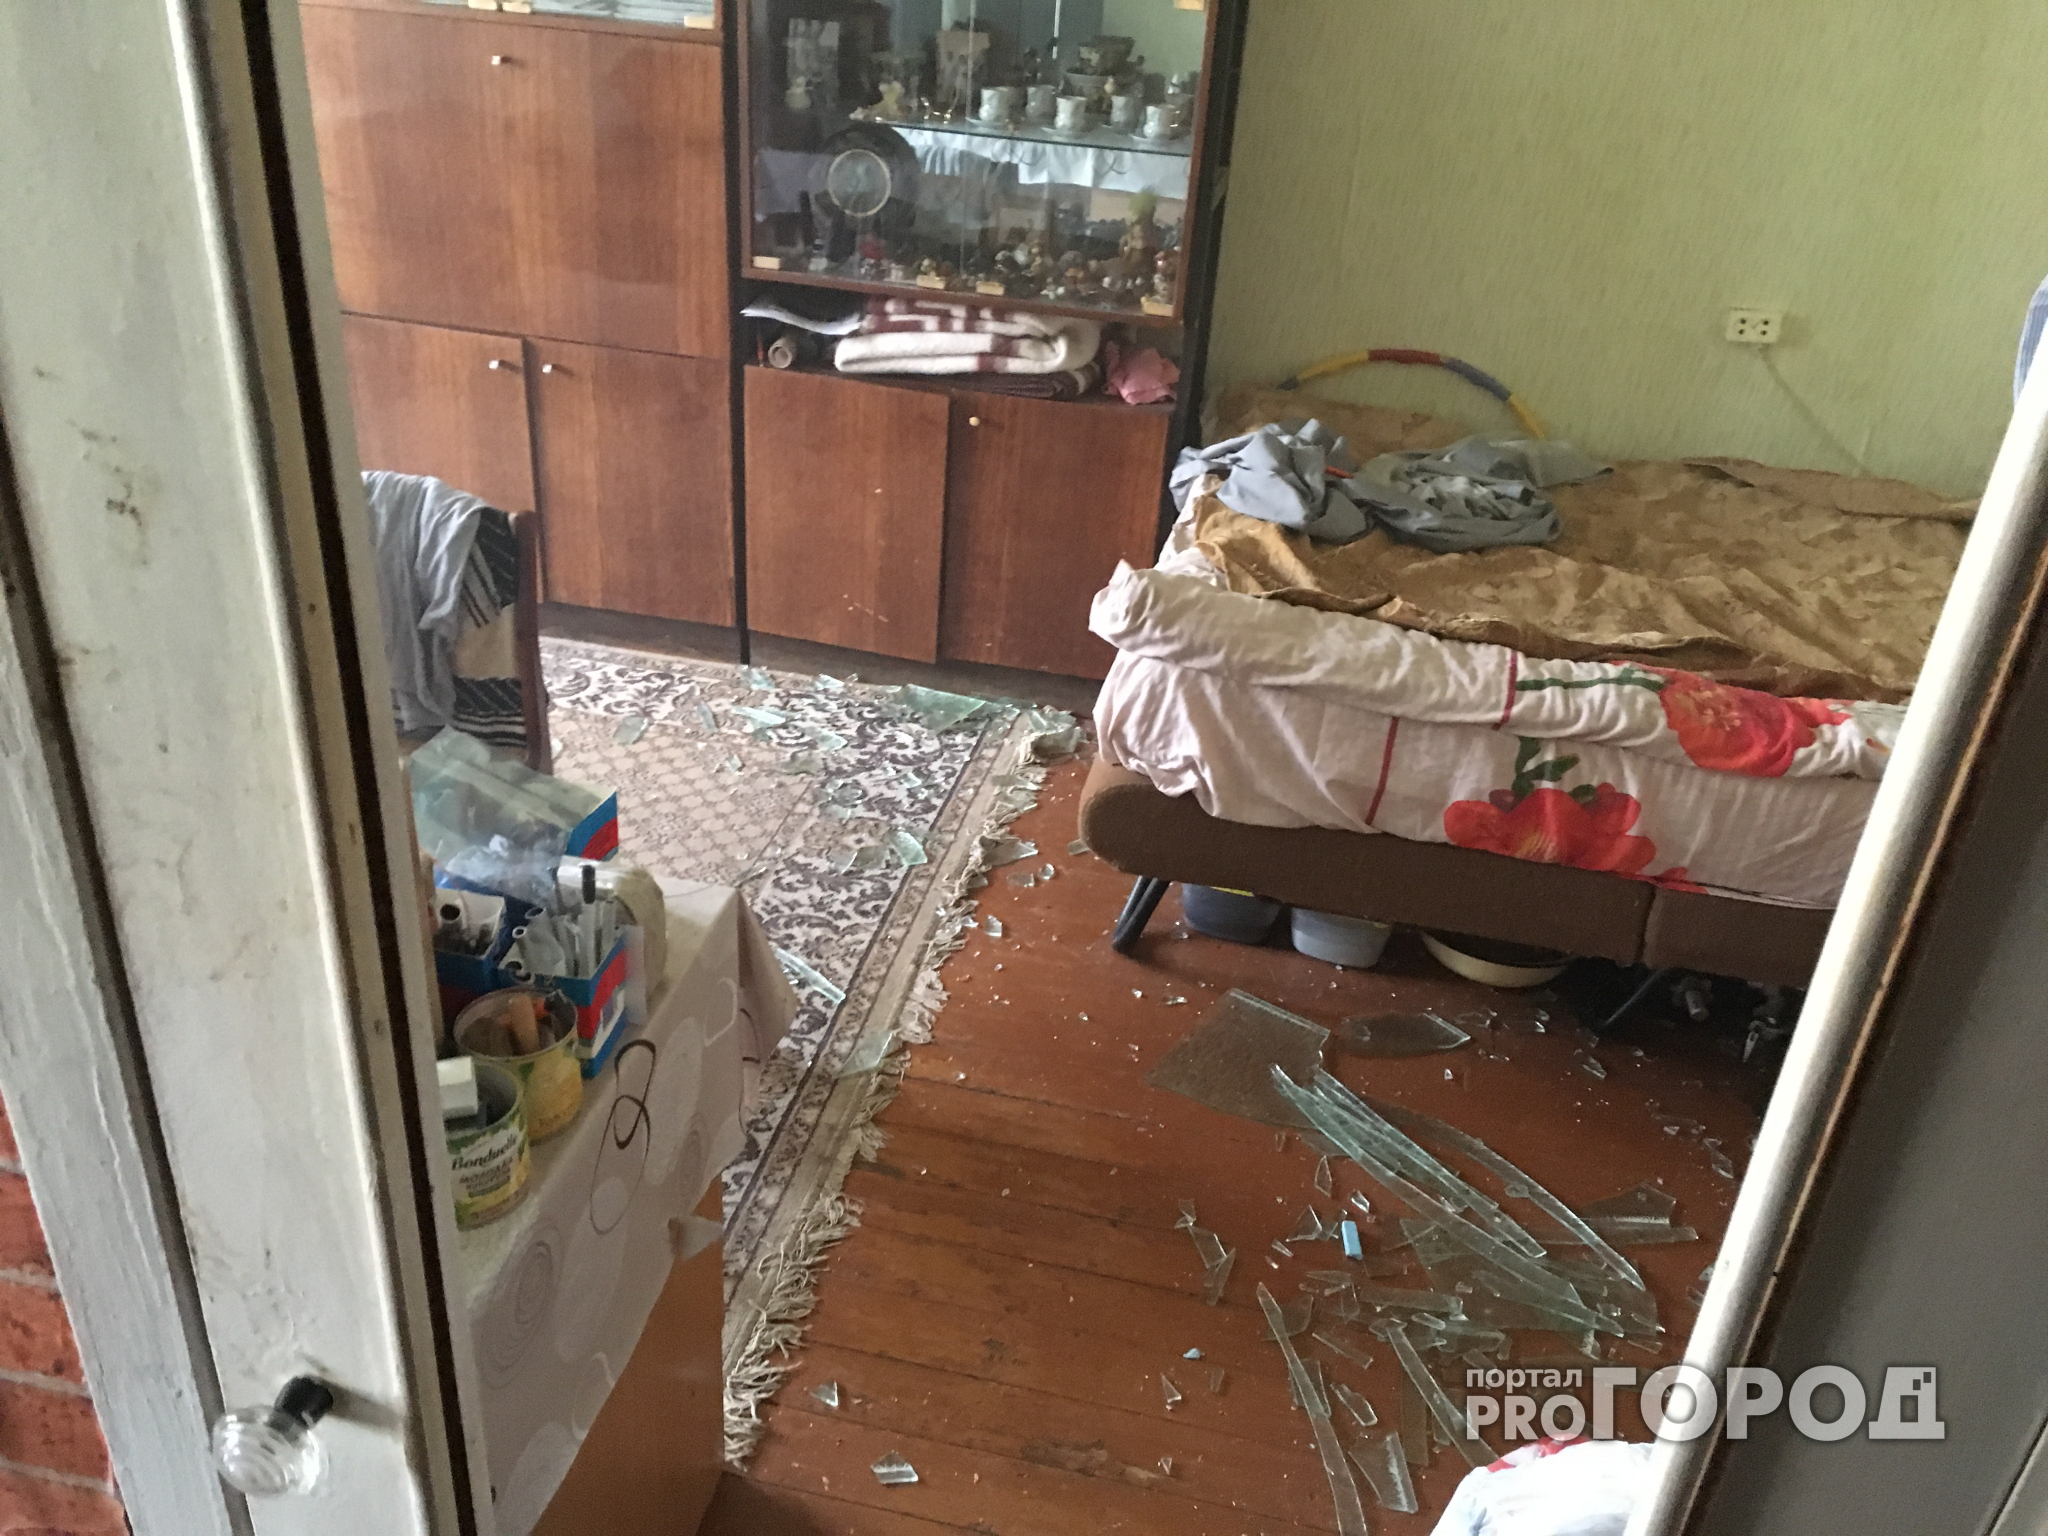 Взрыв в многоэтажке Ярославля: за день хозяин квартиры делал заявку в газовую службу